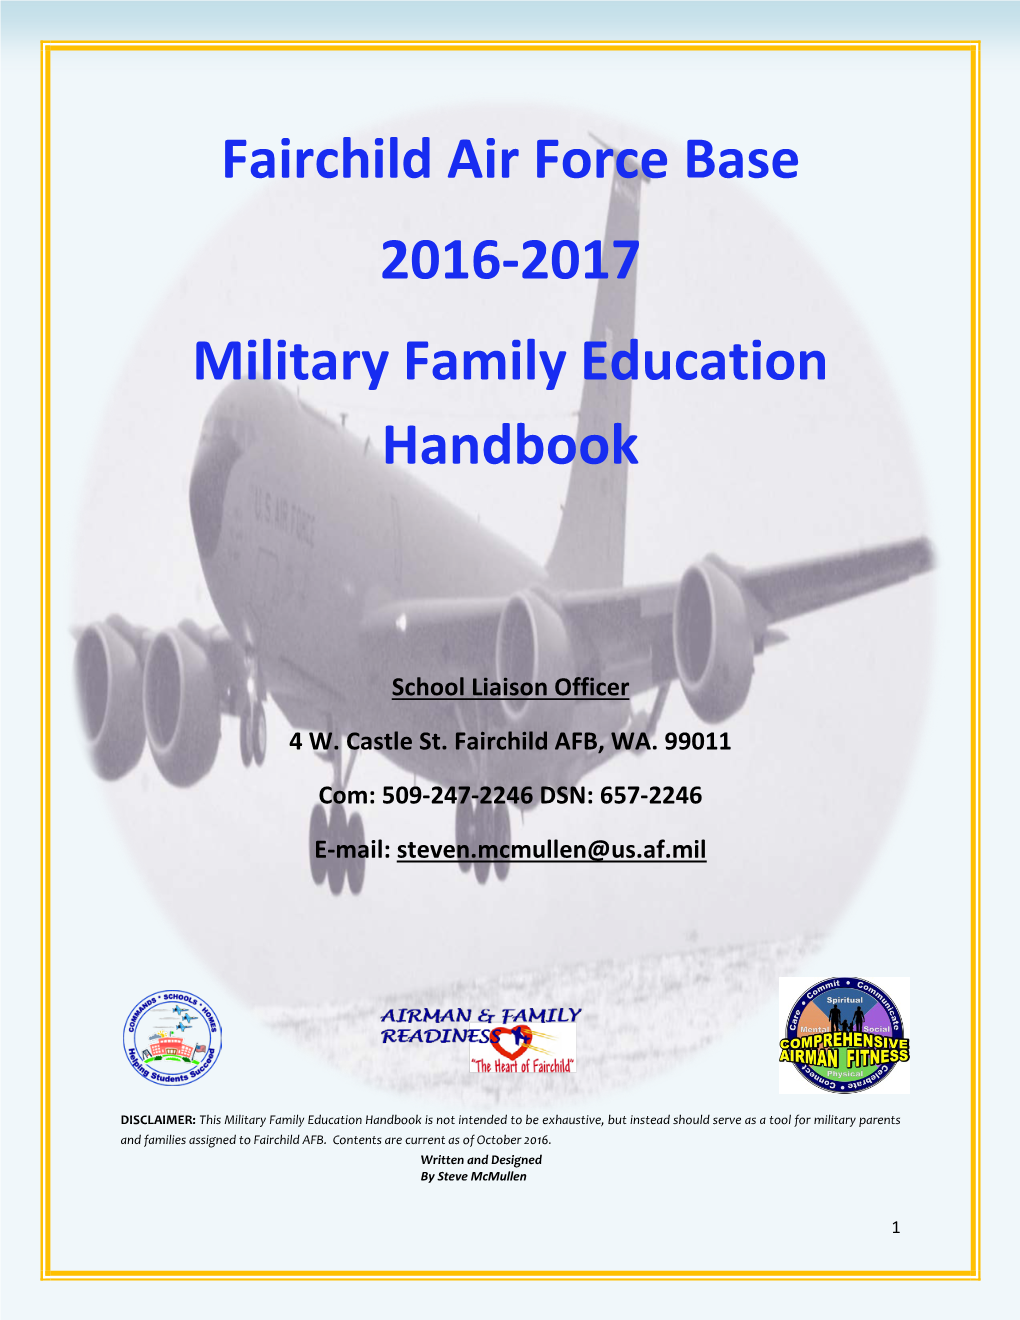 Fairchild Air Force Base 2016-2017 Military Family Education Handbook